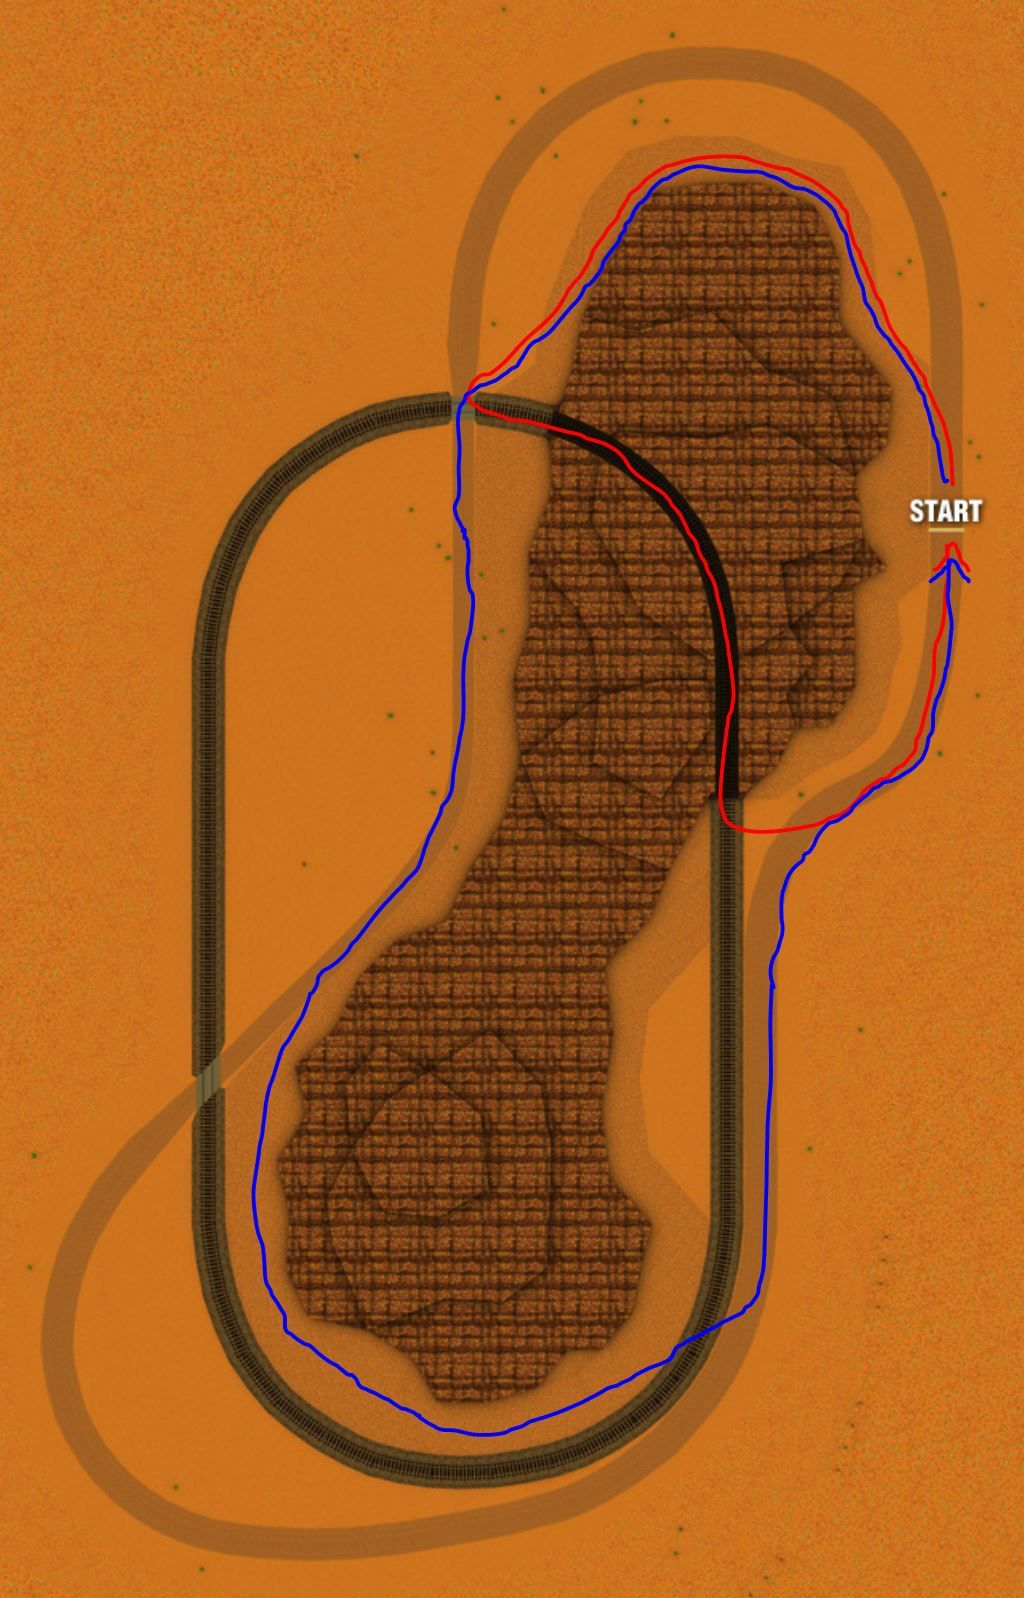 Mario Kart 64 Kalimari Desert Paths